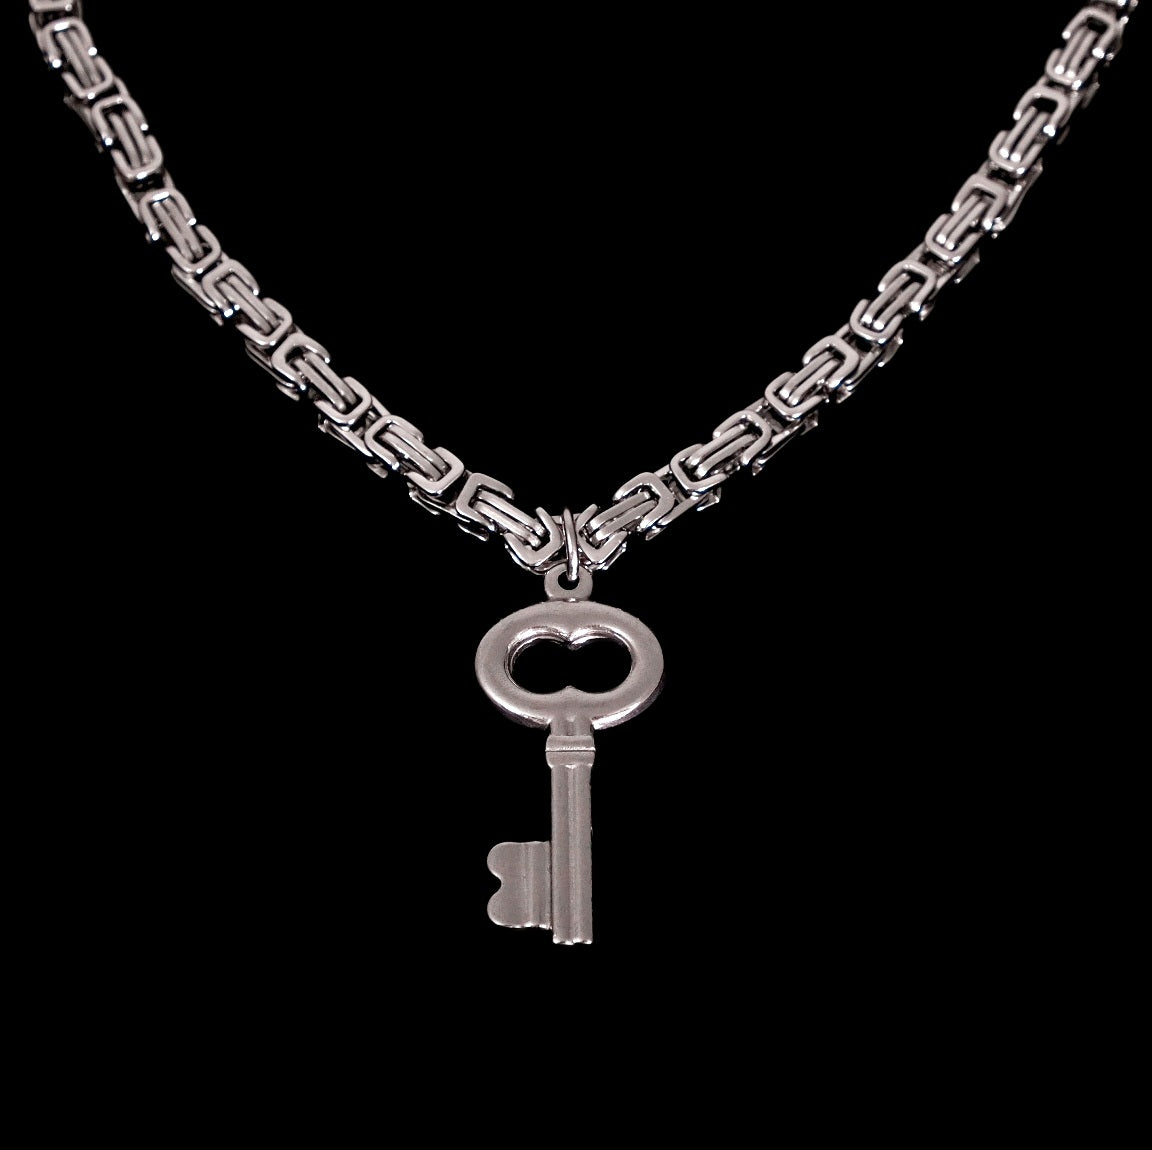 Unlock Key Necklace